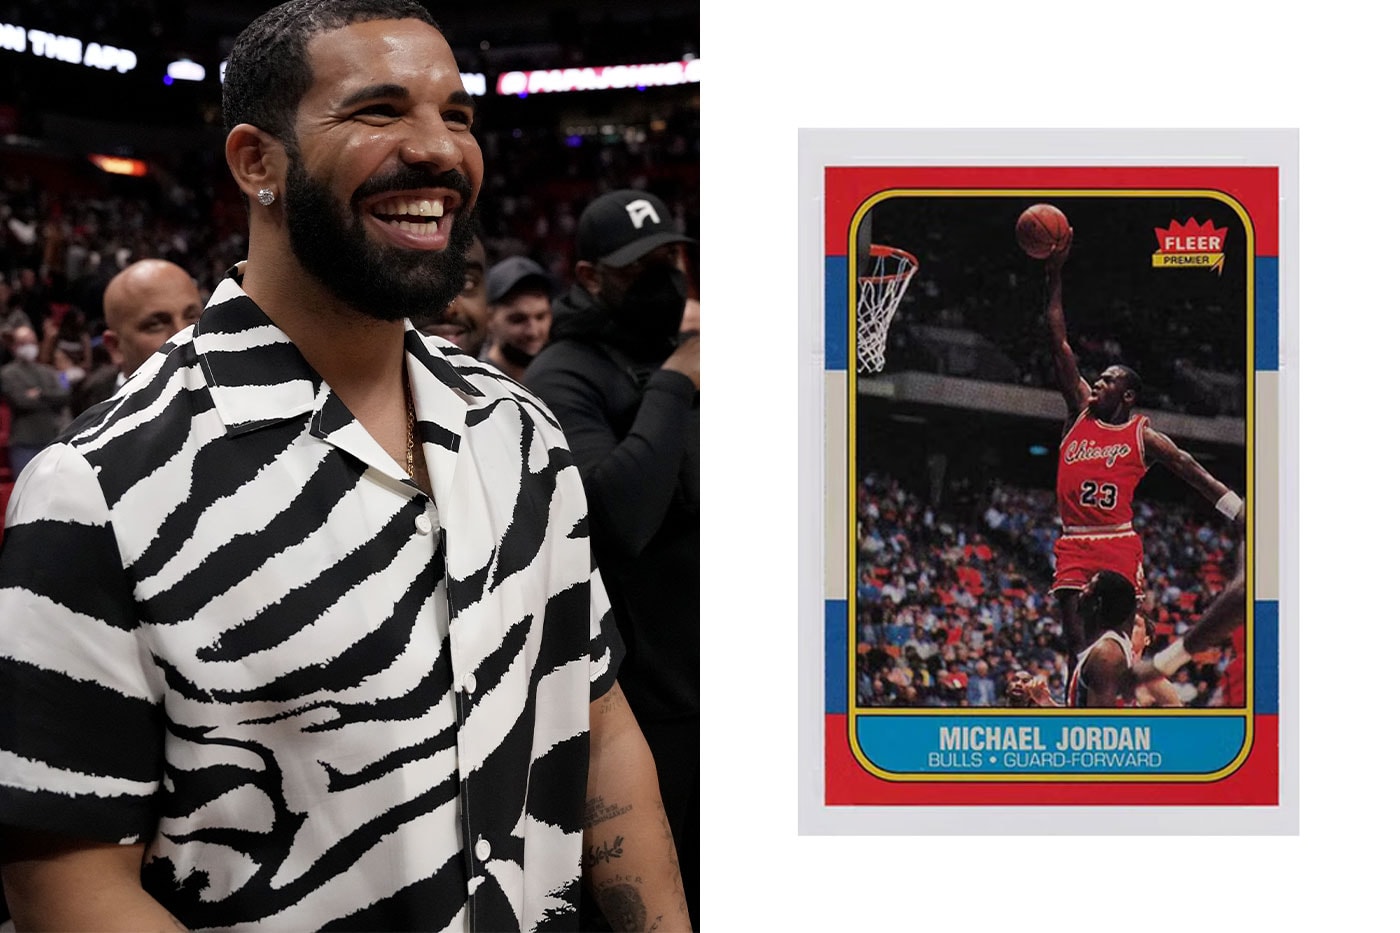 드레이크, 첫 'NBA 카드 팩 개봉'에서 4억여 원짜리 마이클 조던 카드 뽑다, 1986 플리어 마이클 조던 루키, 루키 카드, MJ, 조던 카드, TCG